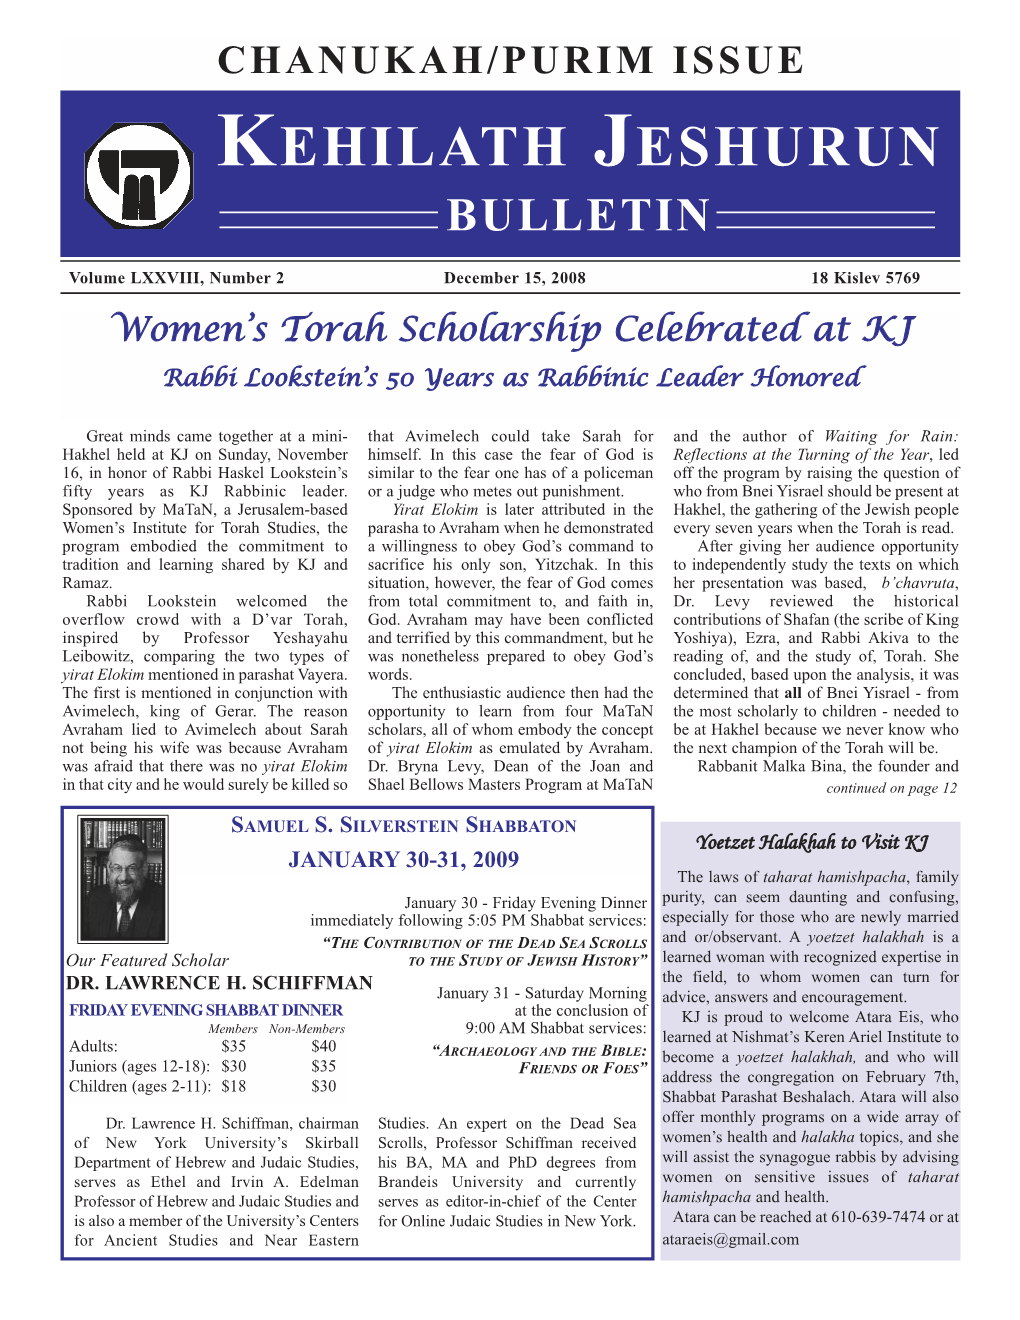 Chanukah Purim Bulletin 5769 2008-9